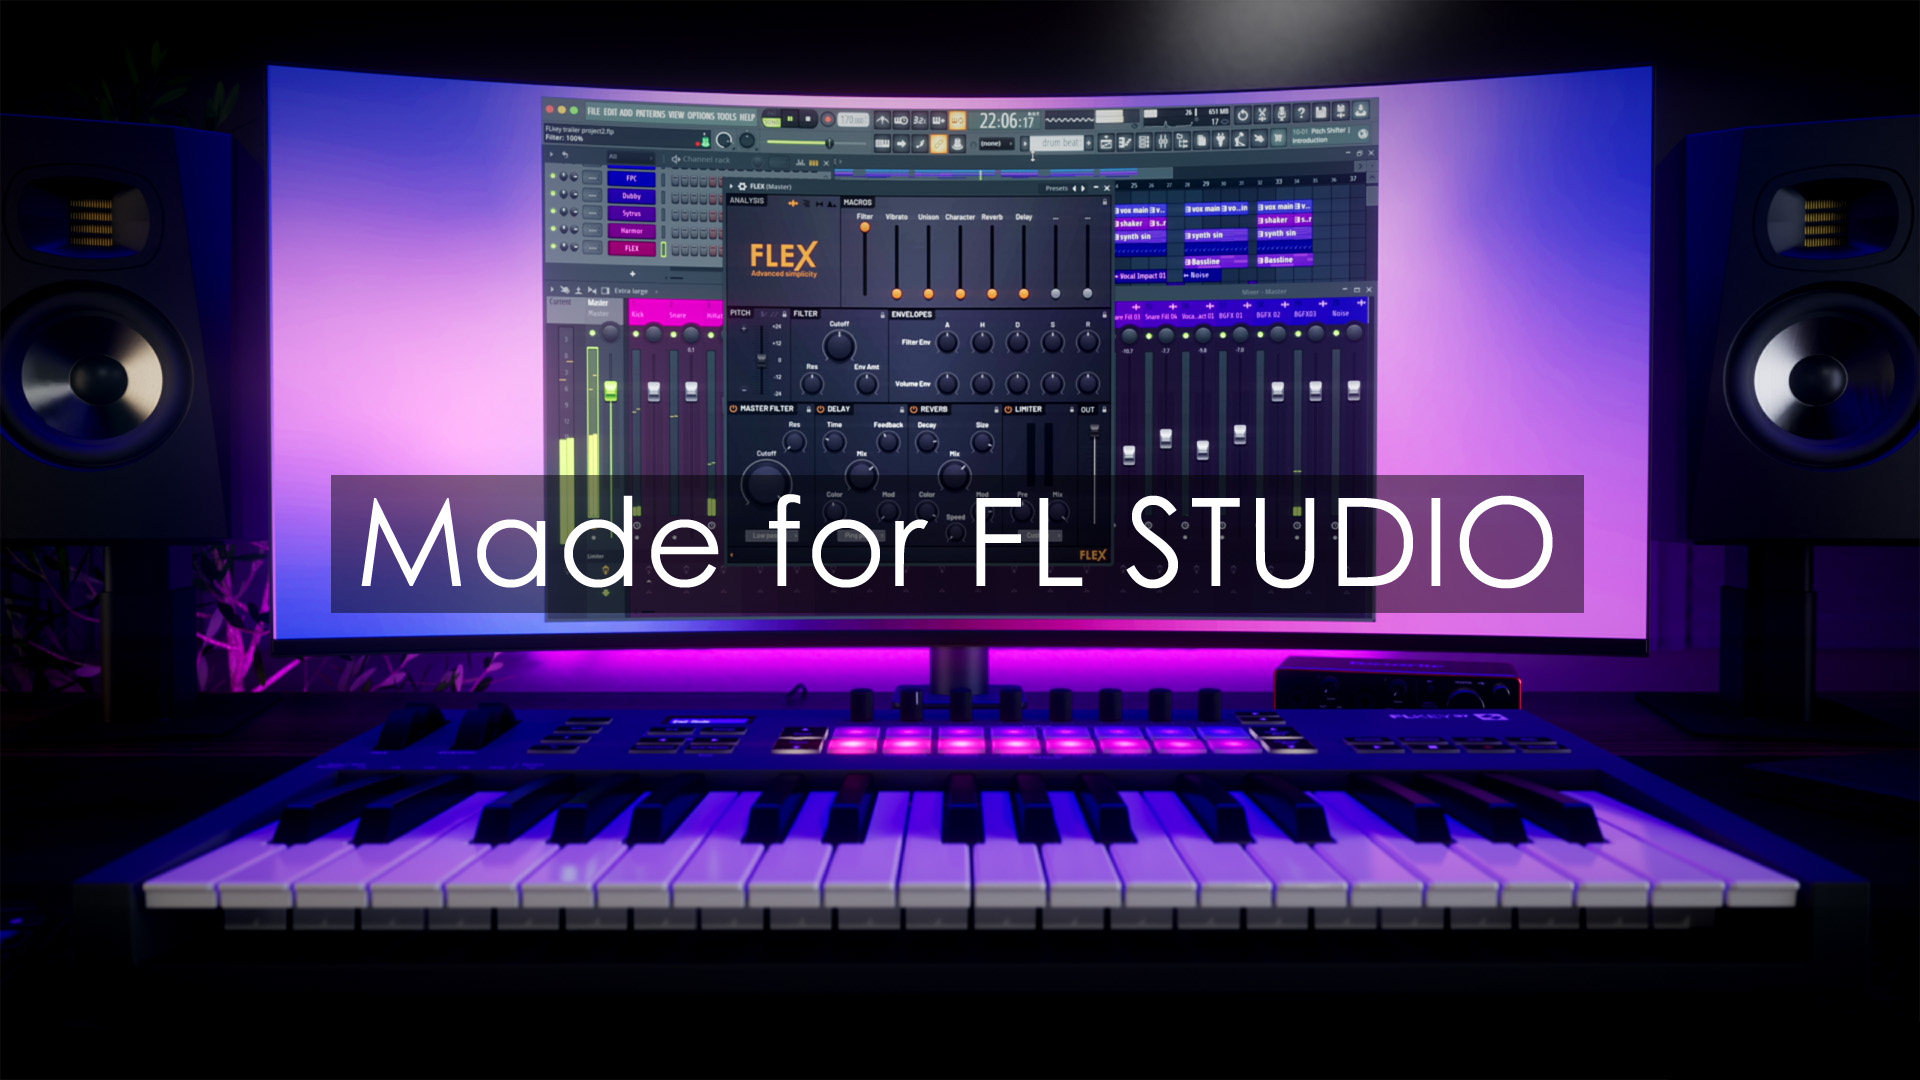 FL Studio Download grátis 20.9.2